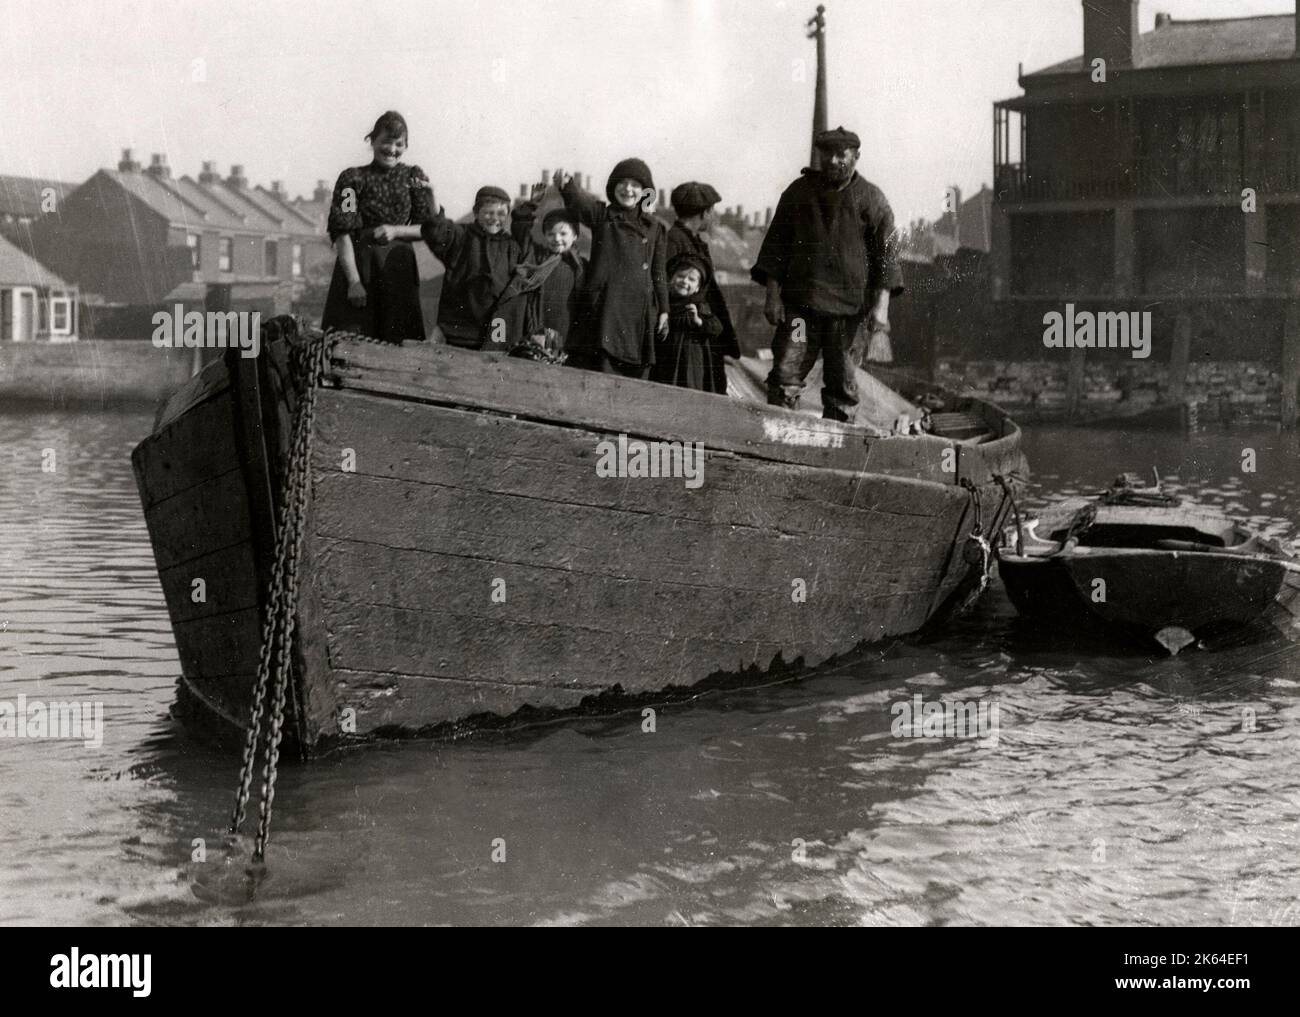 Photo de presse vintage du début du 20th siècle - vie de famille à bord d'un bateau, histoire sociale, pauvreté, Angleterre, 1920s Banque D'Images